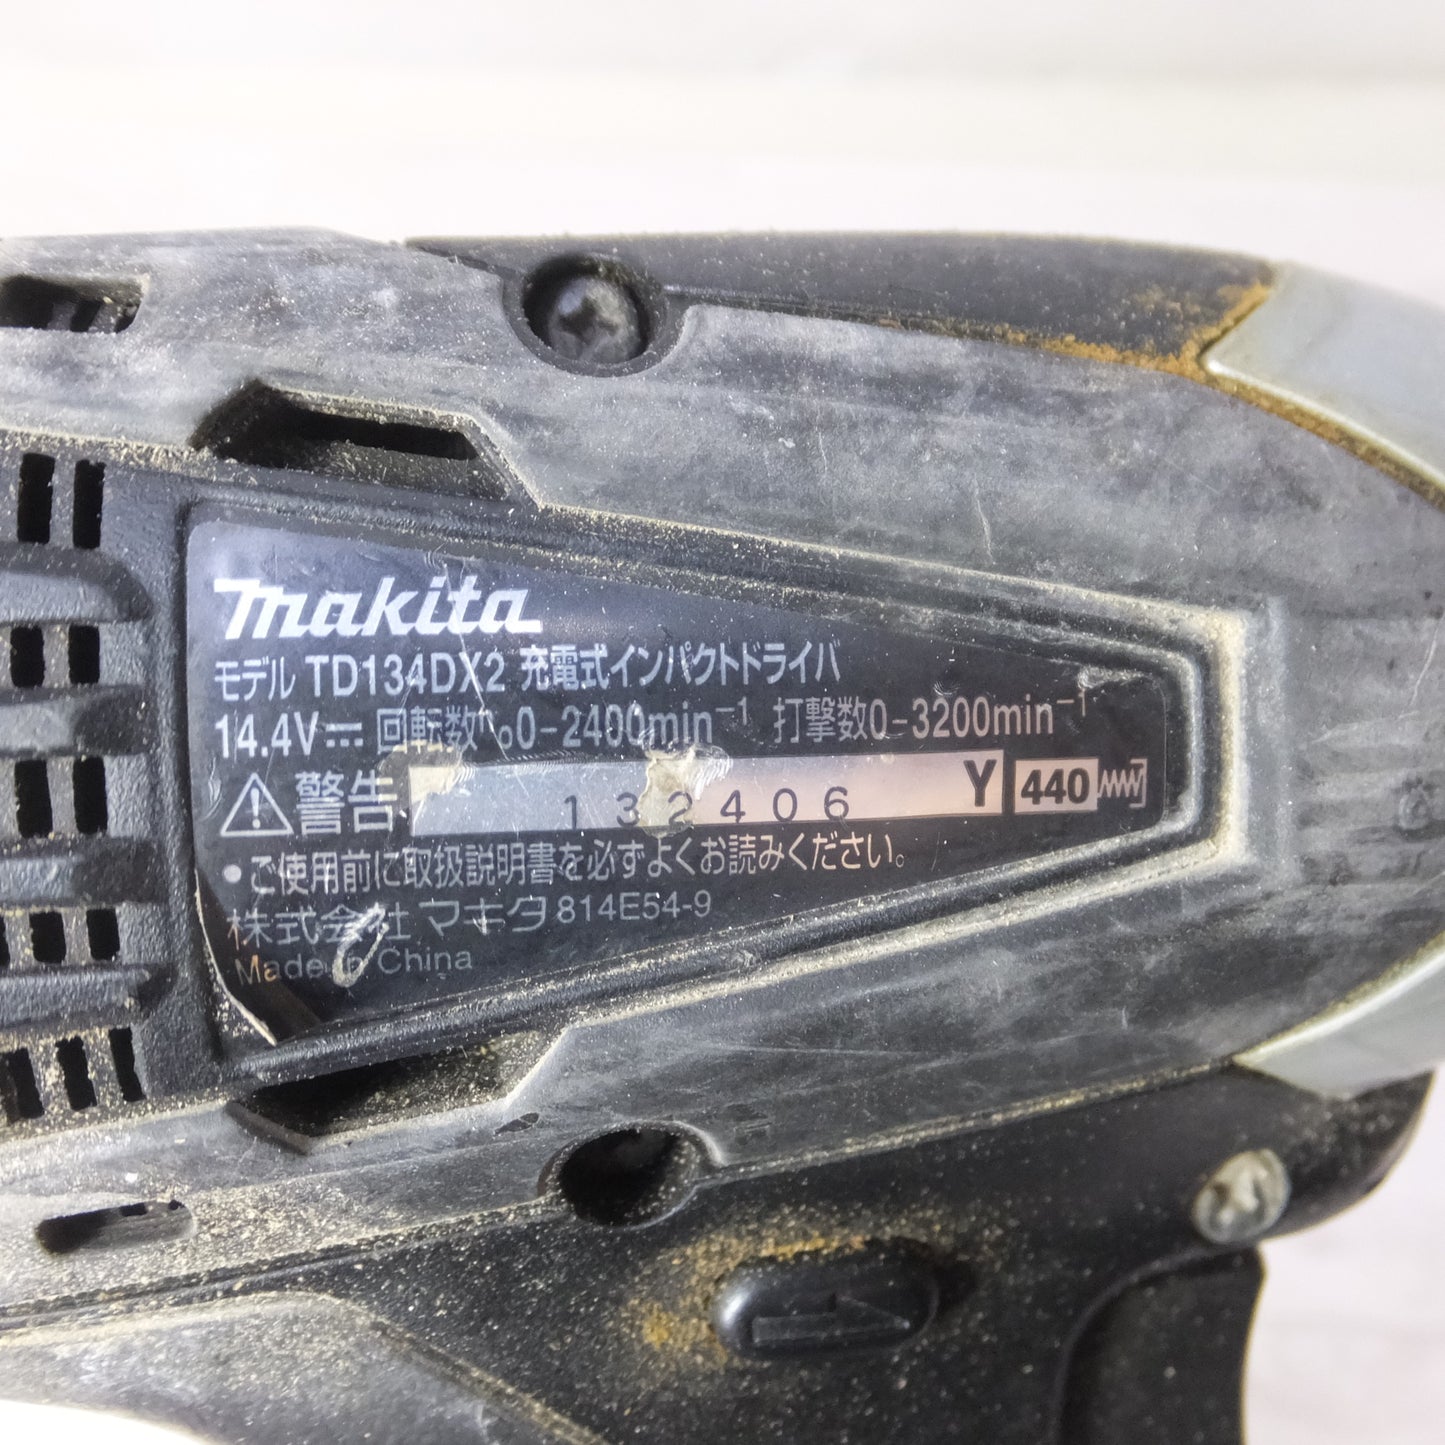 [送料無料] ◆makita マキタ 充電式インパクトドライバ TD134DX2 14.4V バッテリー 充電器付き 電動工具◆